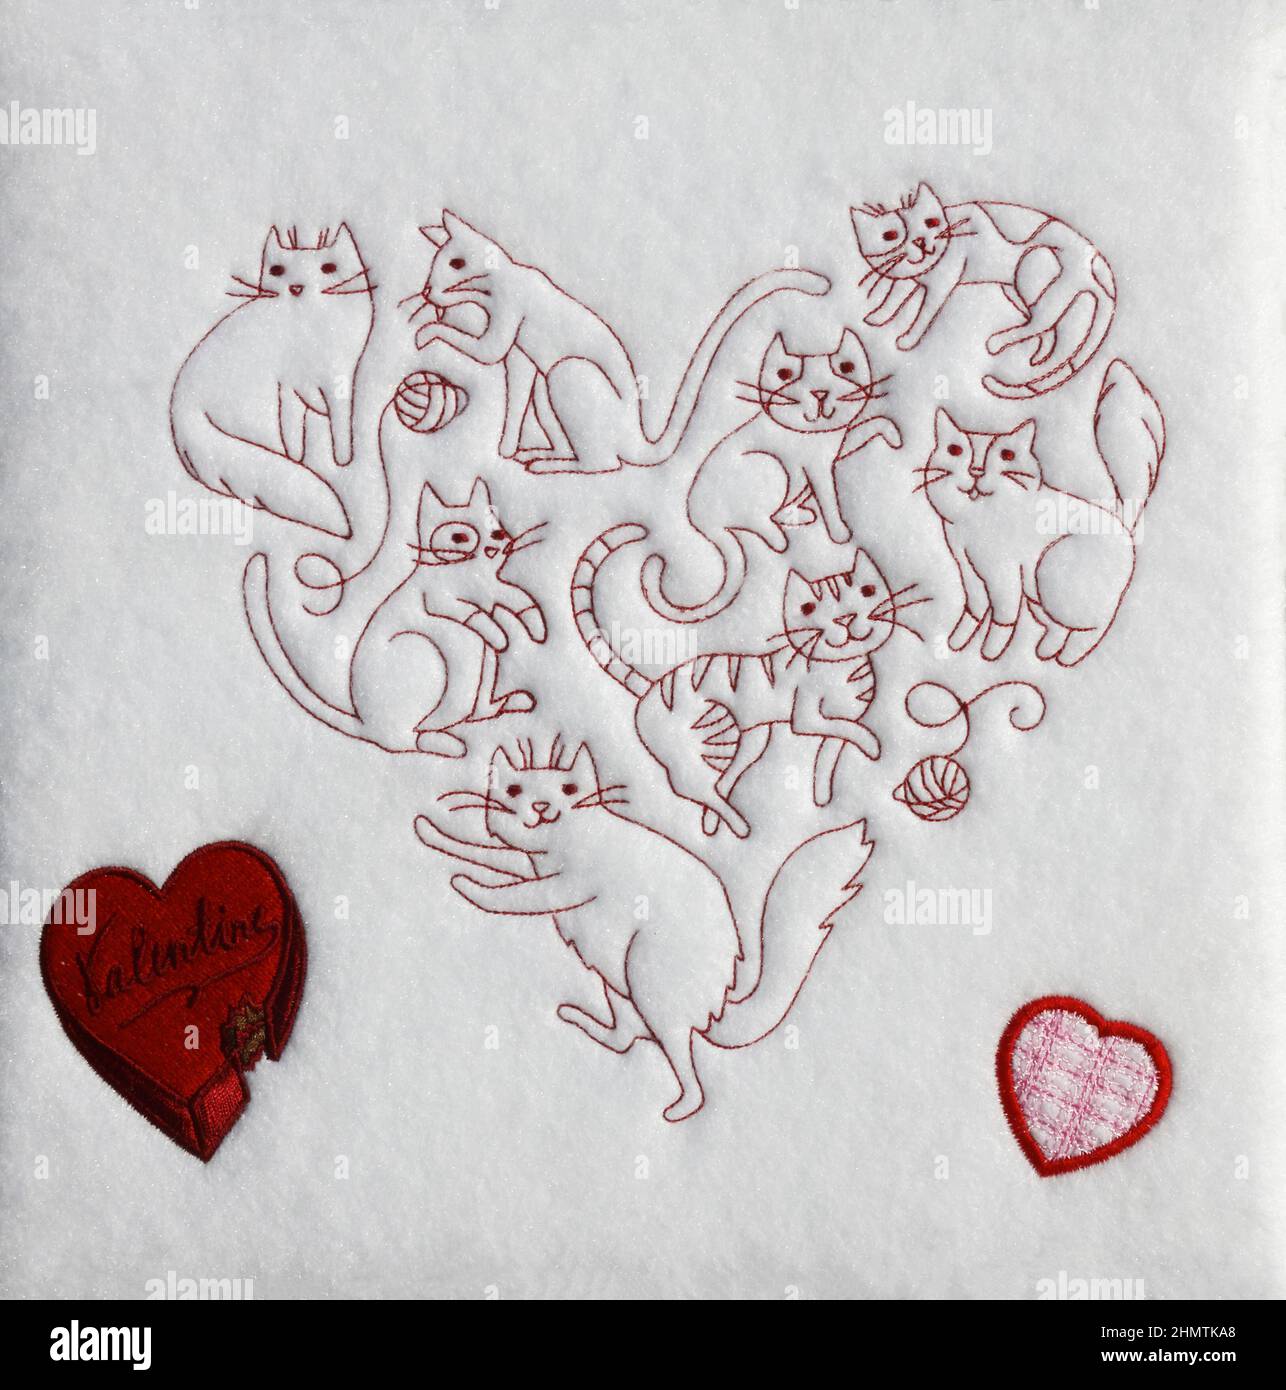 Cuore di gatti, ricamo, tessuto in feltro bianco, tema San Valentino, 2 cuori rossi, vacanza, artigianato, carino, cucire, abilità, PR Foto Stock